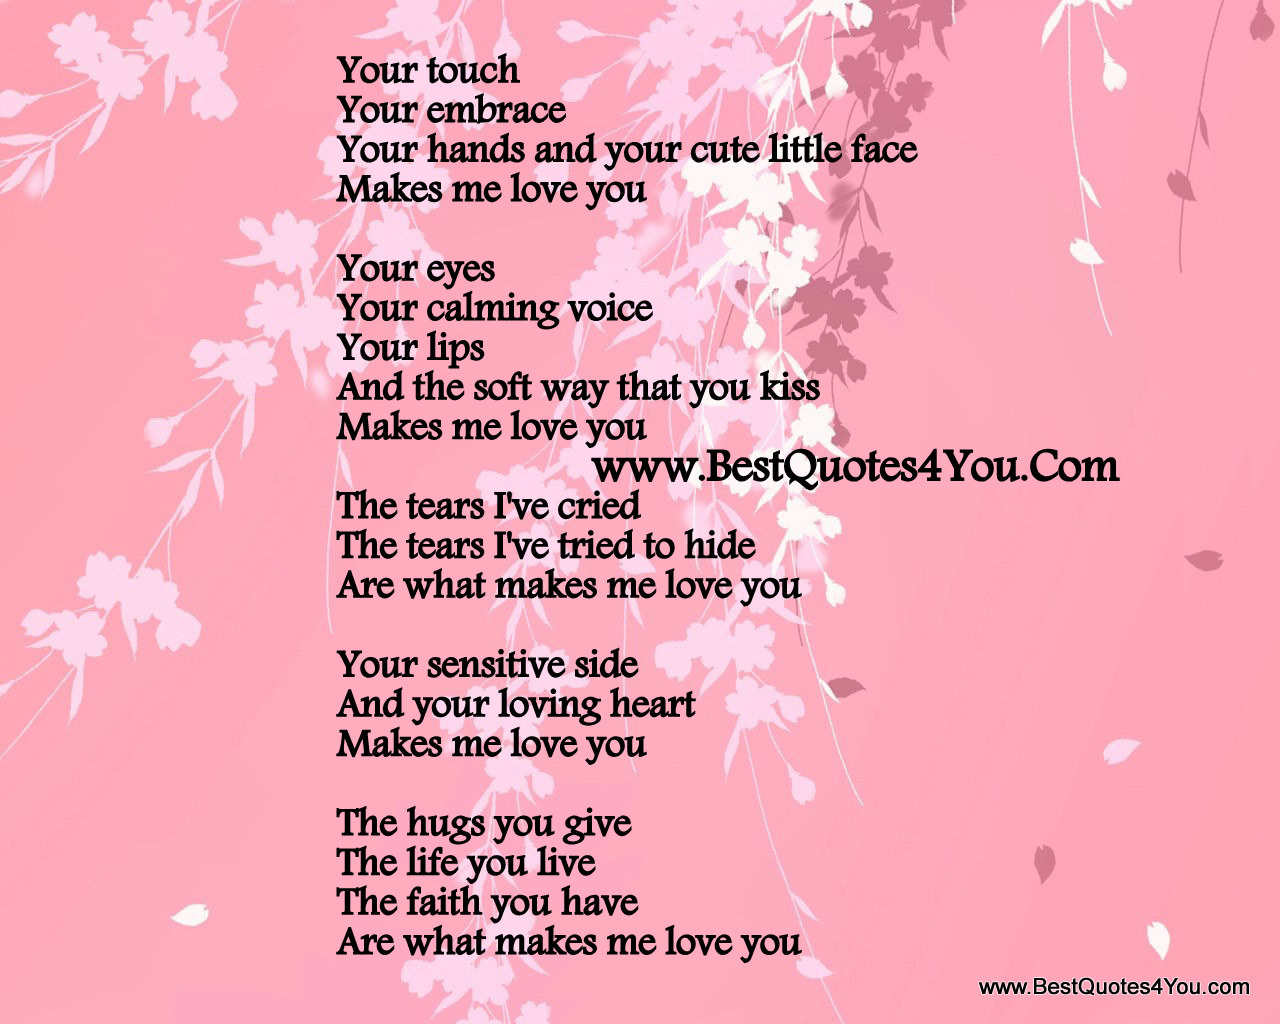 Cute Boyfriend Poems - Poem To My Girlfriend - 1280x1024 Wallpaper -  